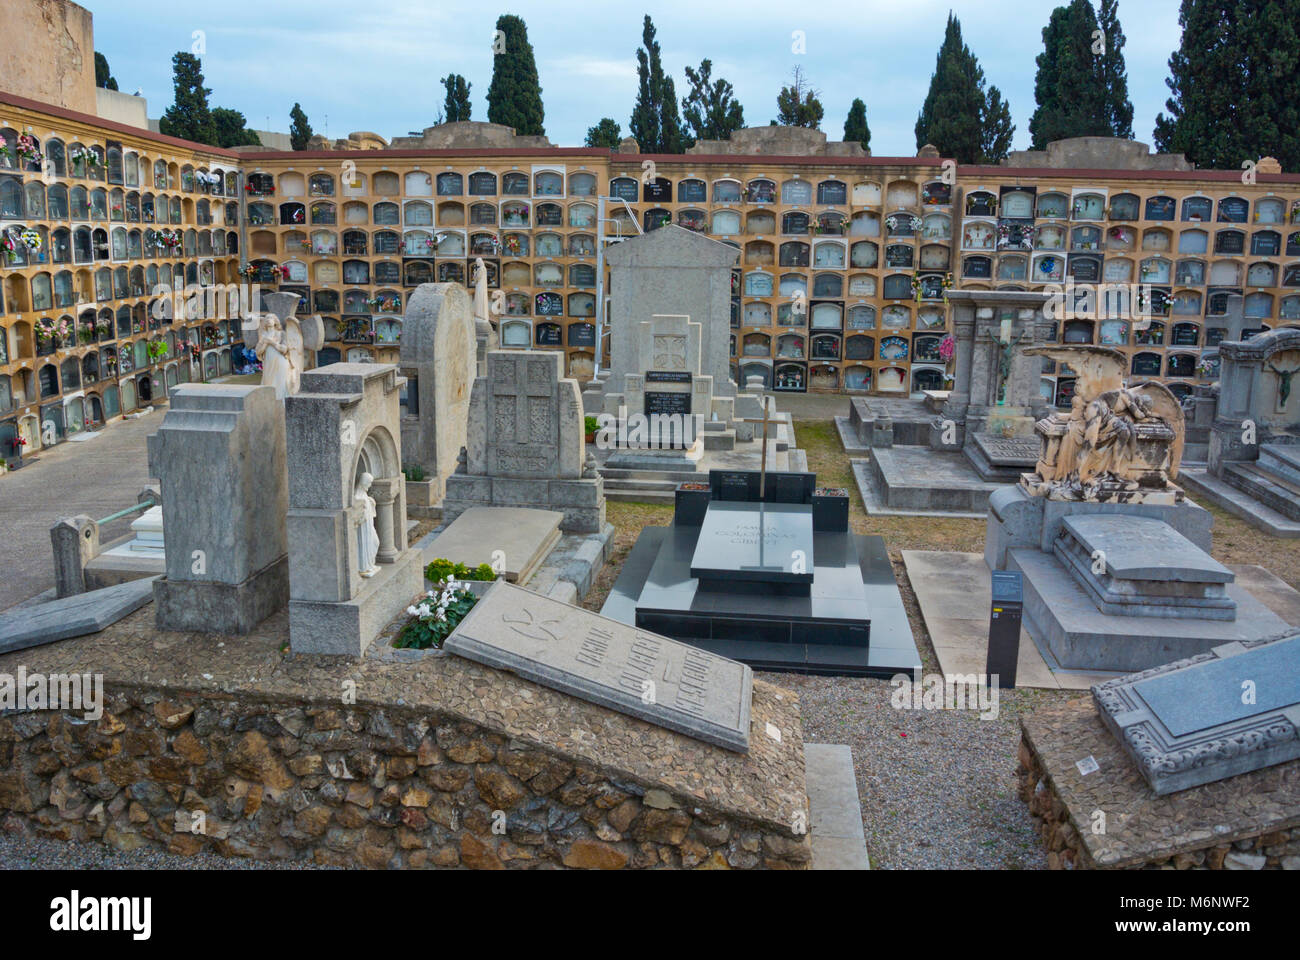 Cementiri de Les Corts, cemetery, Barcelona, Catalonia, Spain Stock Photo